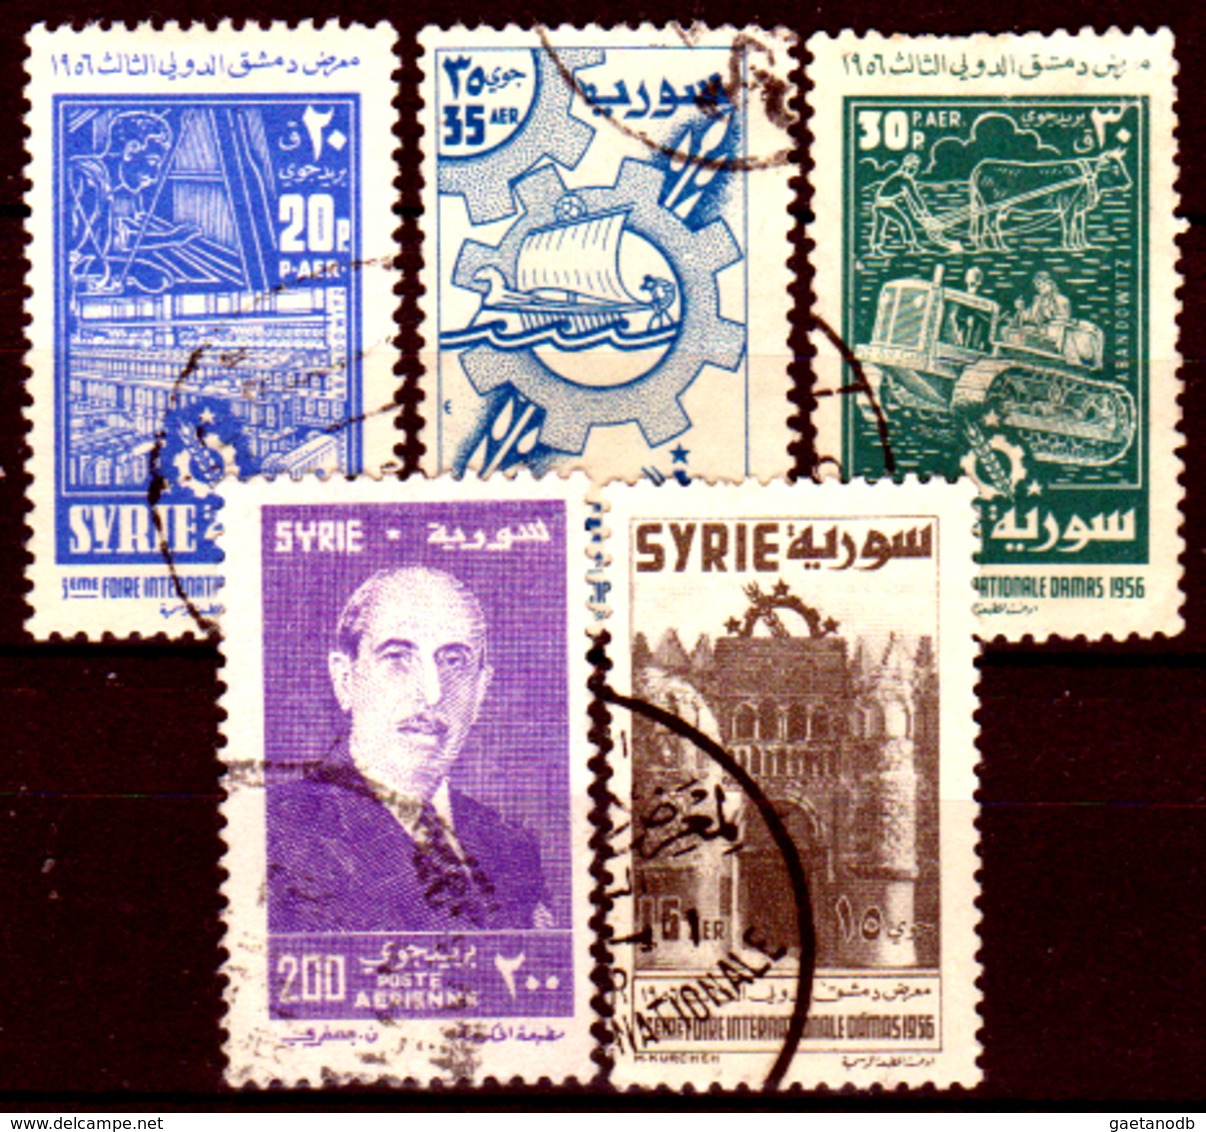 Siria-00167 - Posta Aerea 1956 (o) Used - Senza Difetti Occulti. - Siria